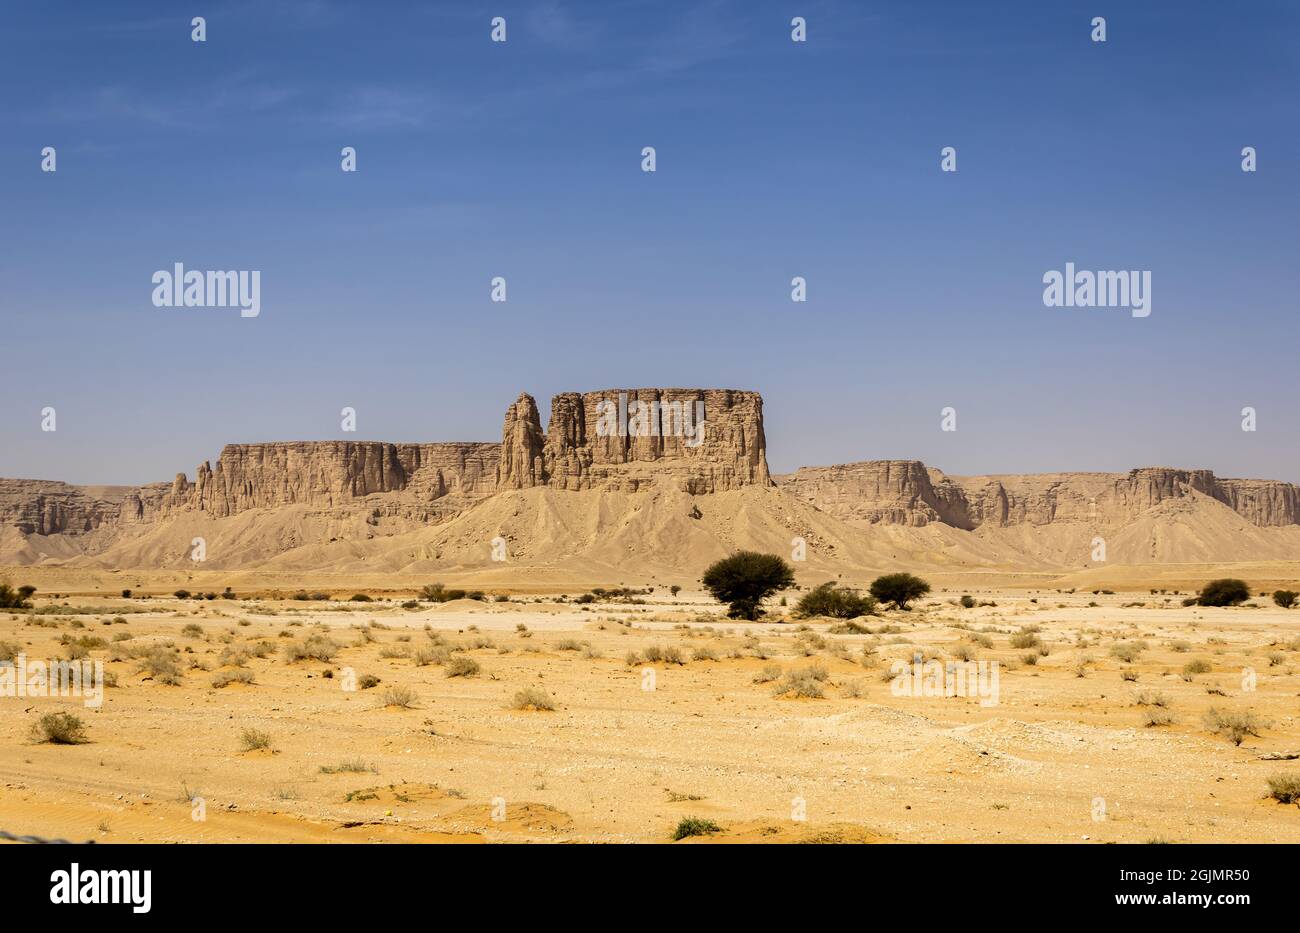 Sandstone formations of Jabal Tuwaiq near Riyadh, Saudi Arabia Stock Photo